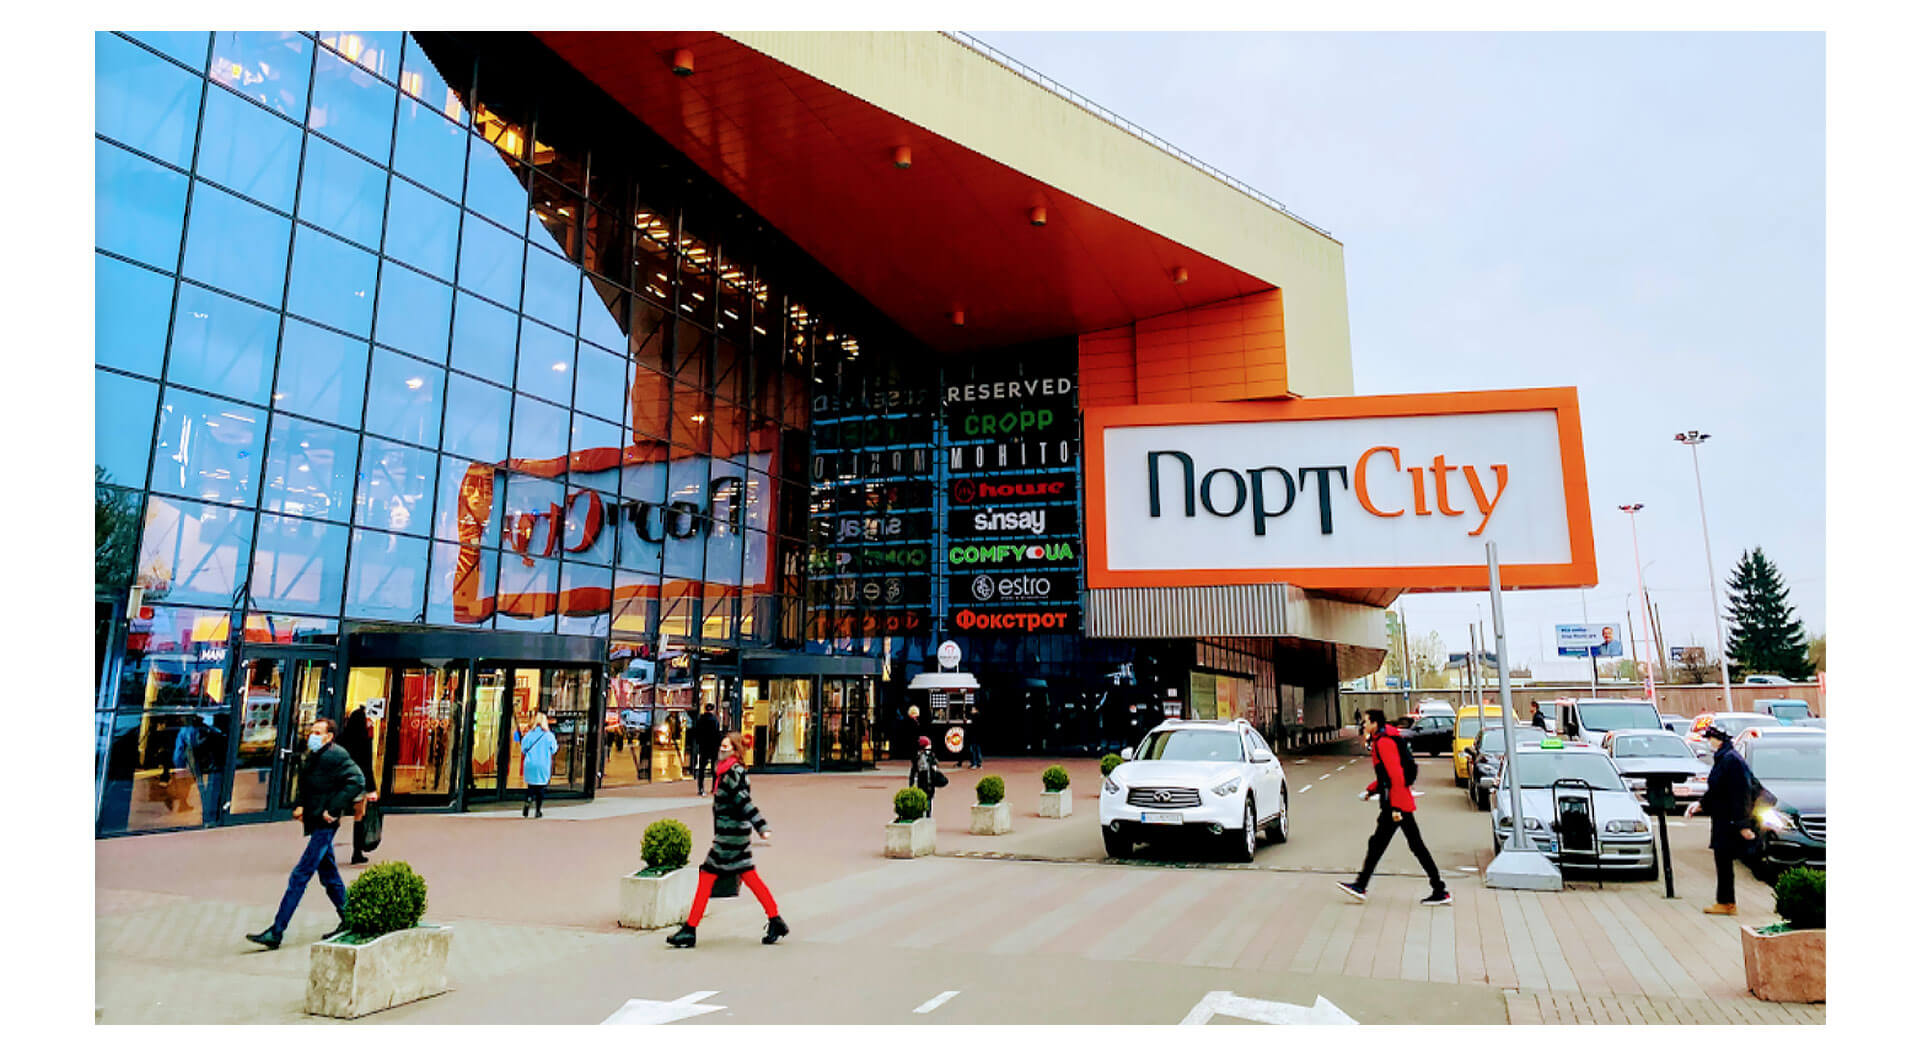 Port City shopping mall brand identity entrance design and signage Lutsk, Ukraine